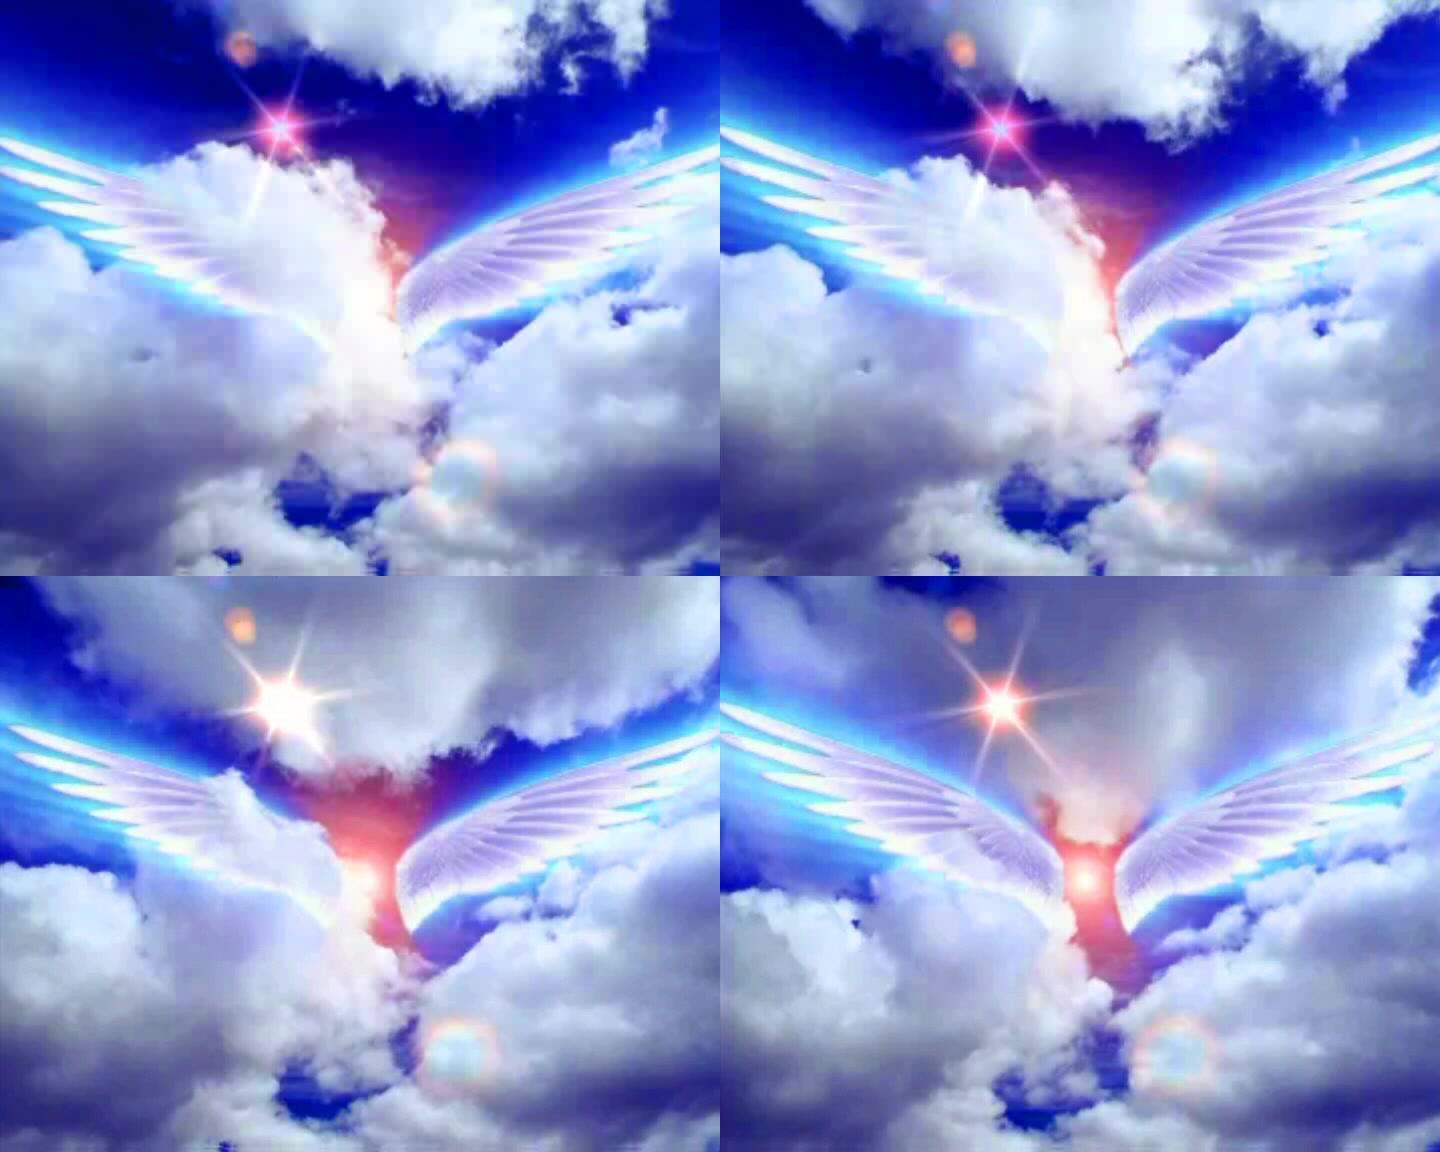 天使之翼